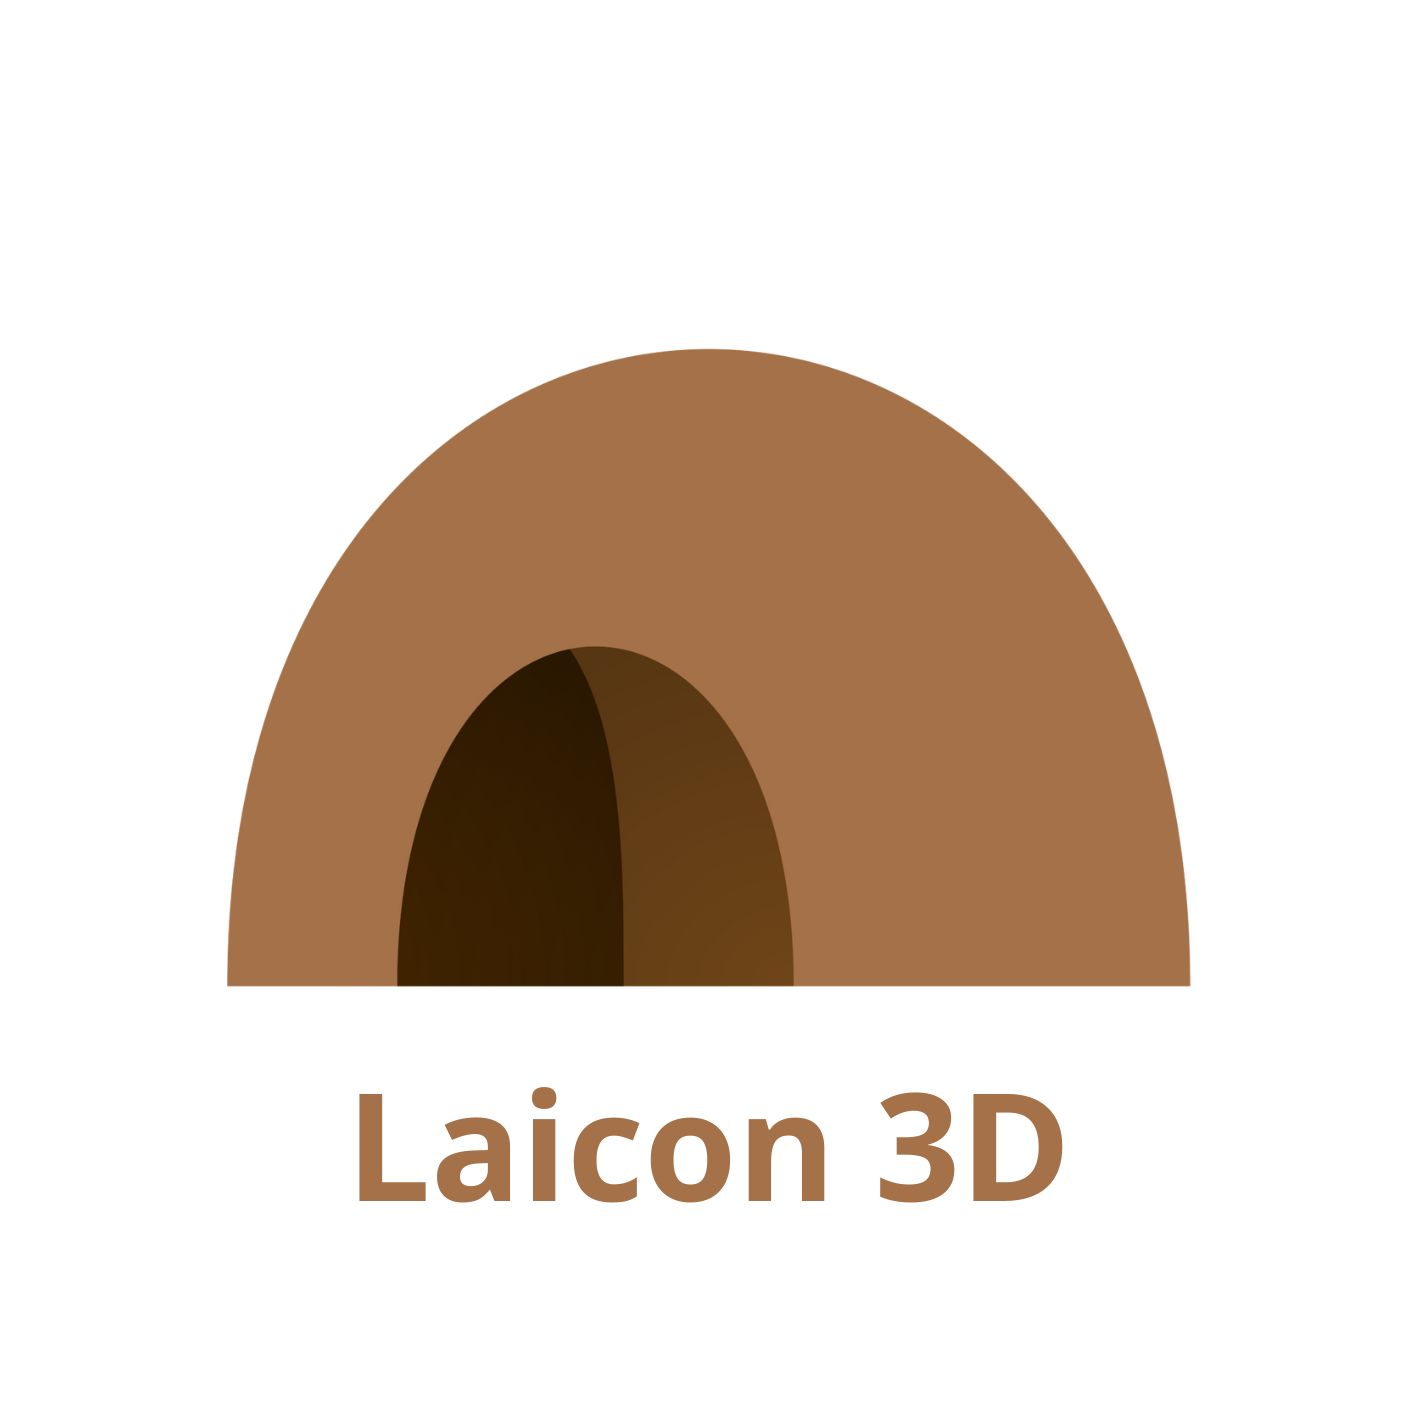 Laicon 3D